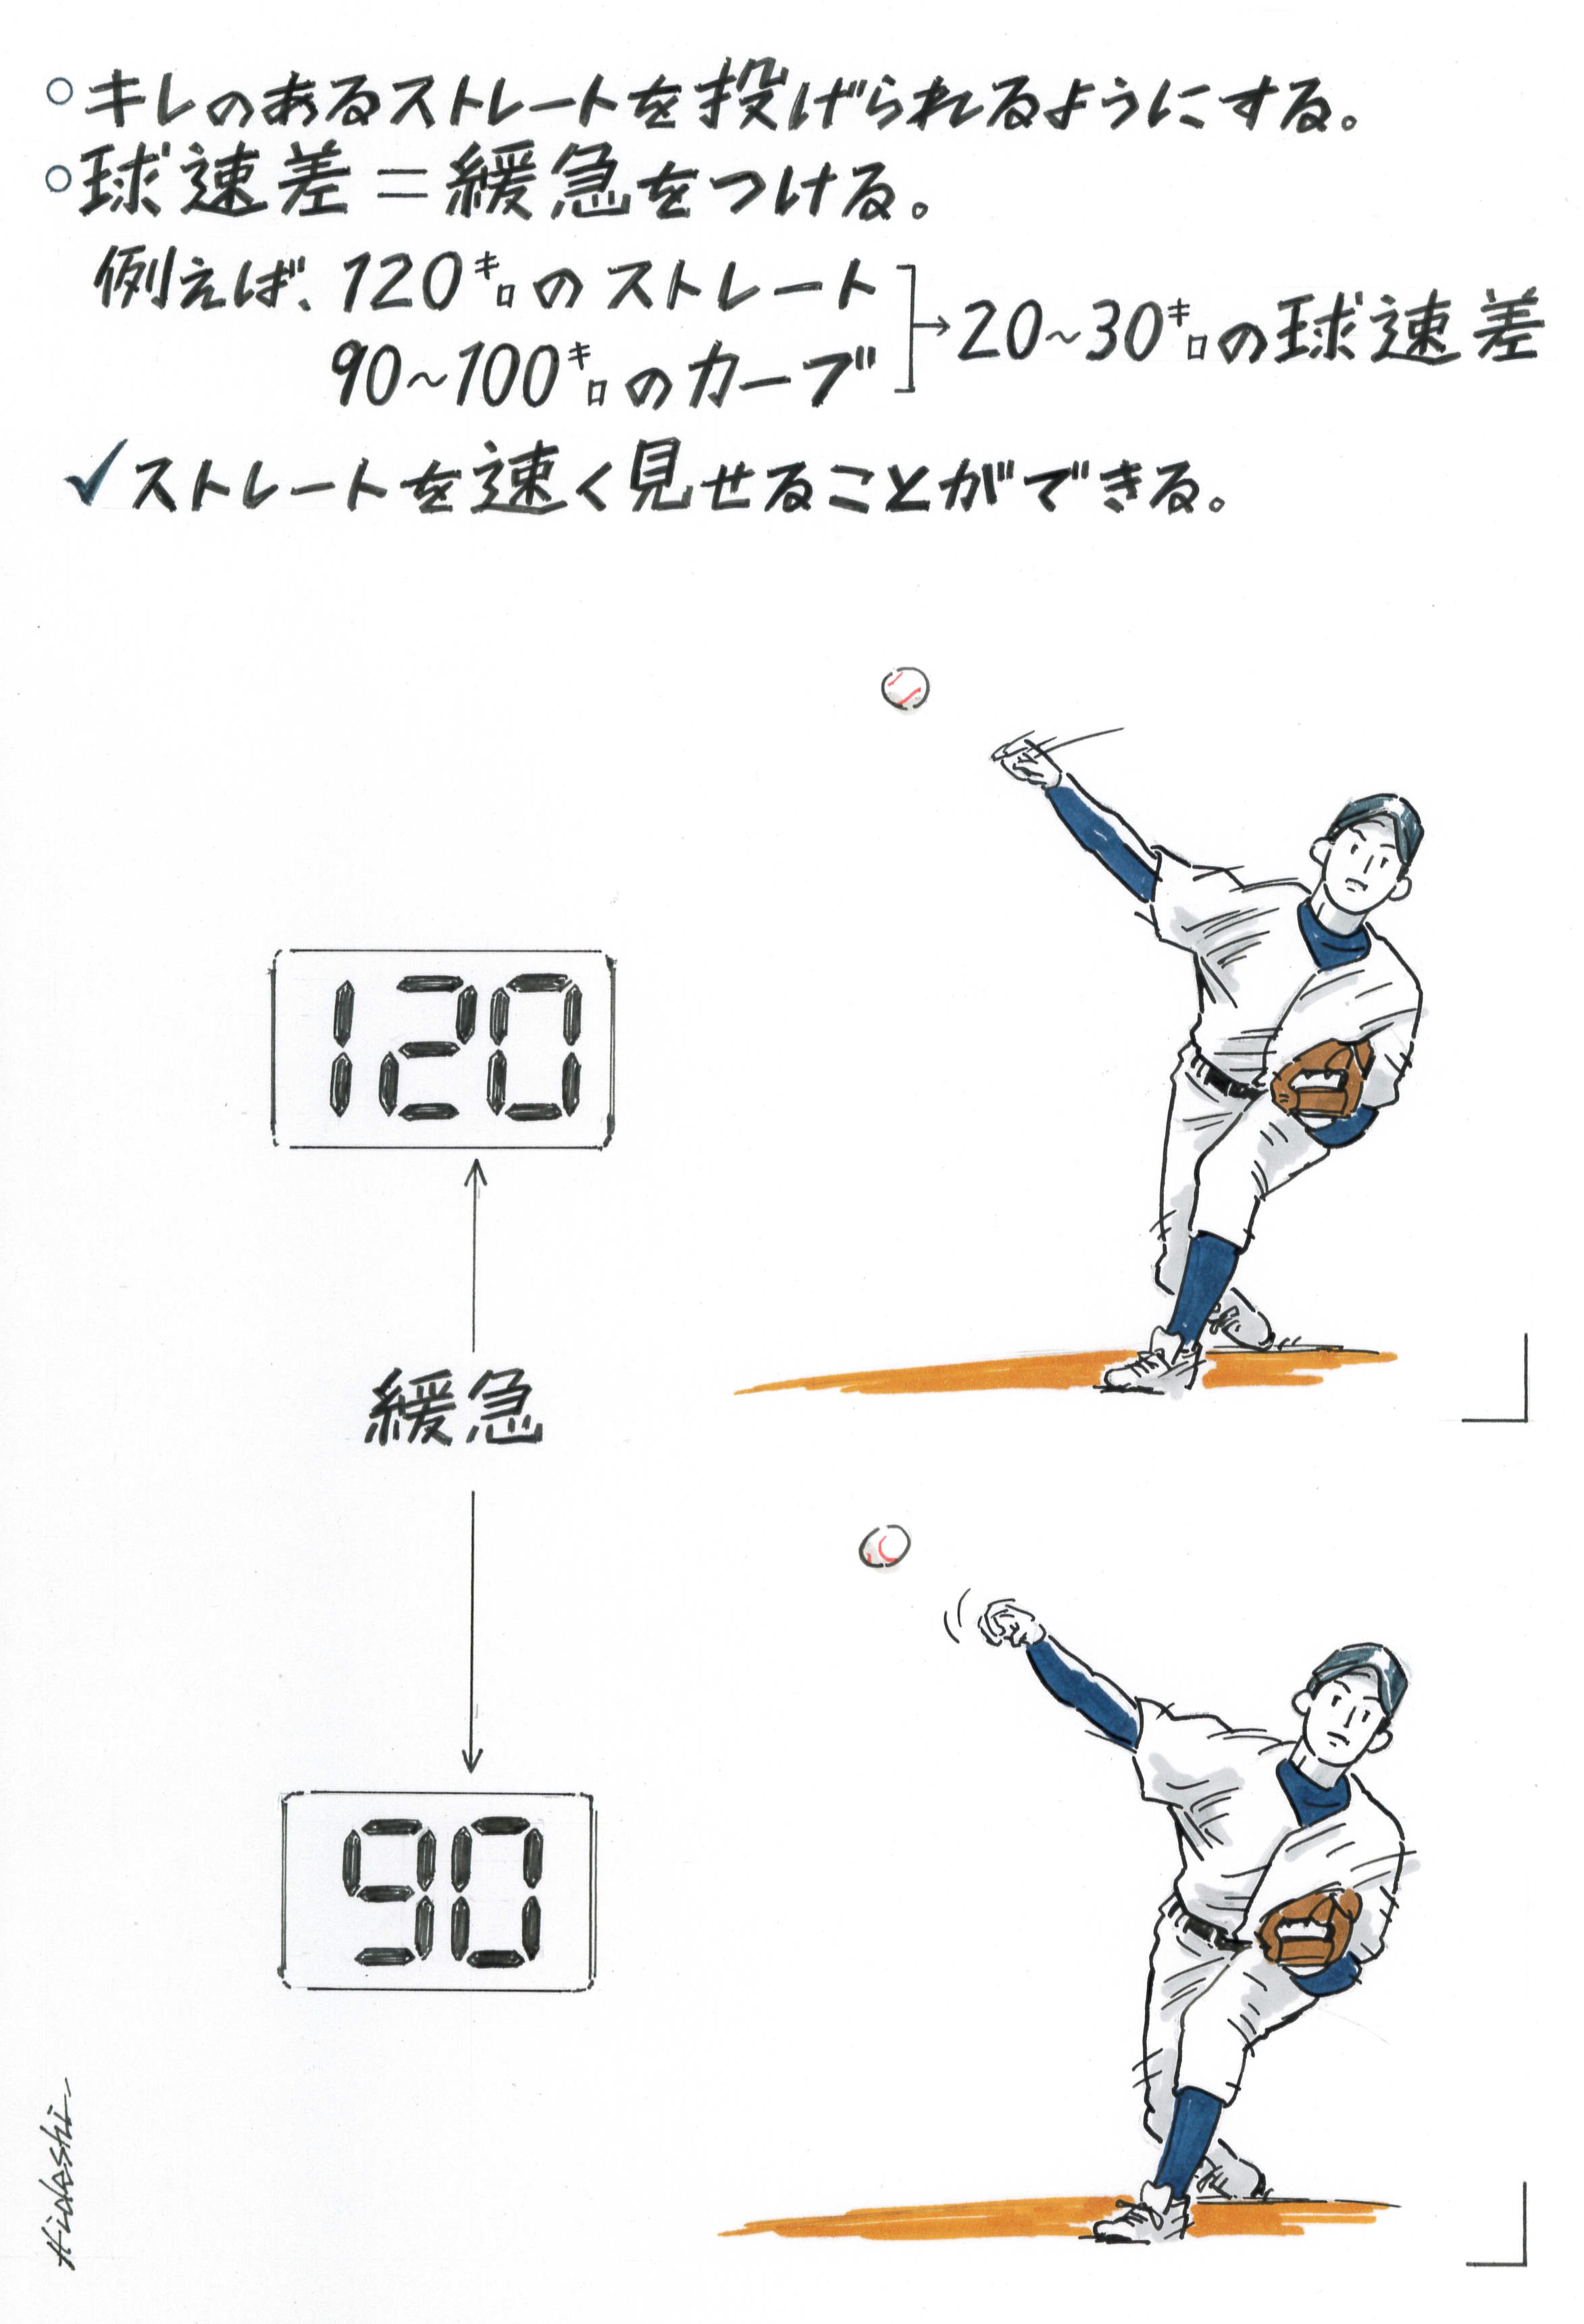 球速が遅い投手でも打者を押し込むような投球をするには 元阪神 藪恵壹に聞く 野球コラム 週刊ベースボールonline